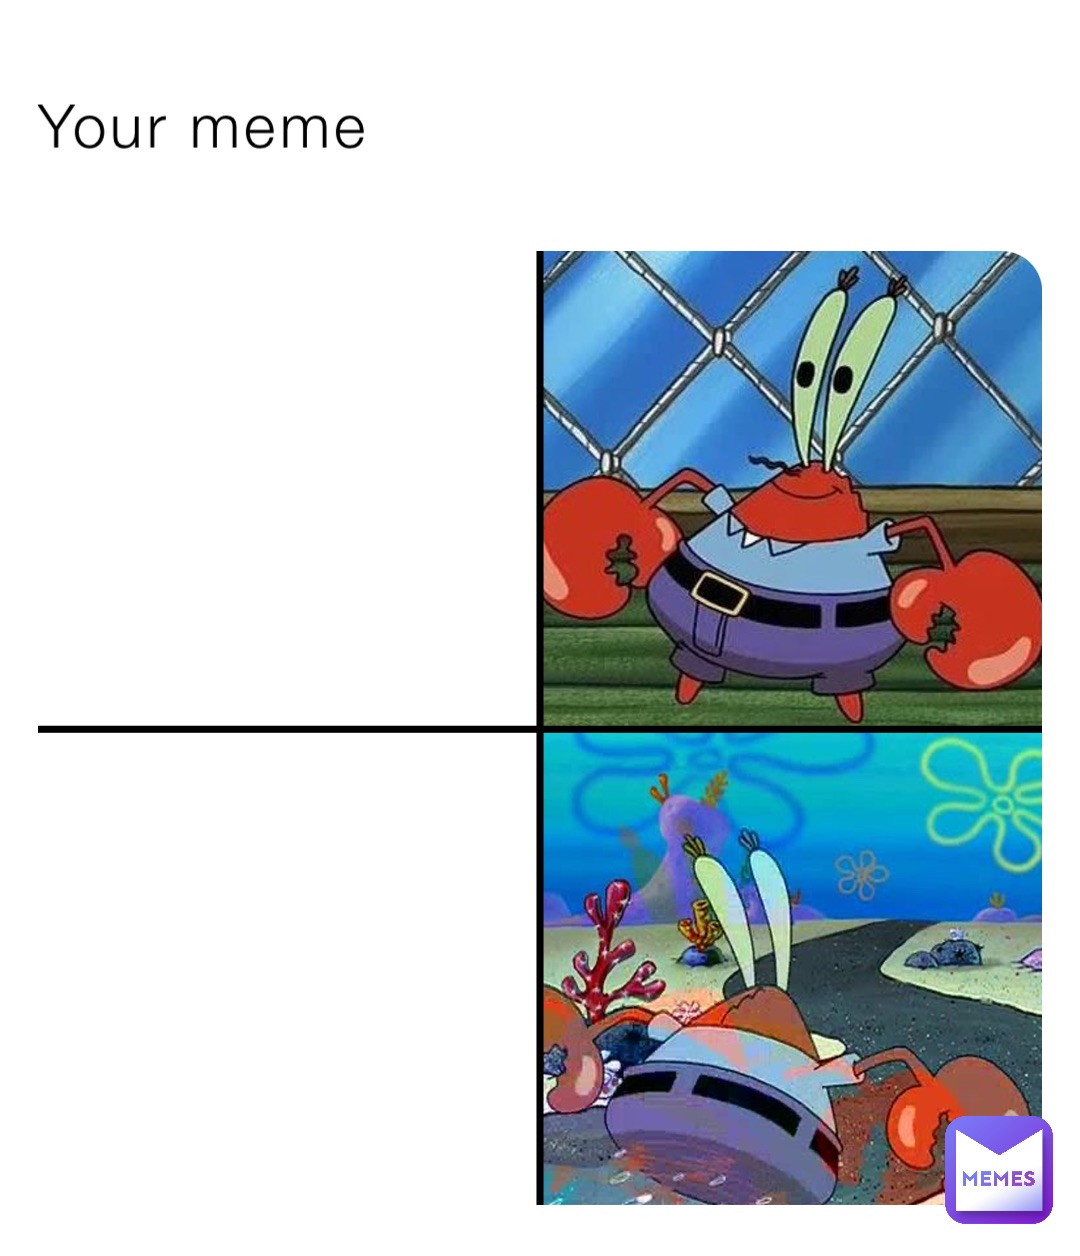 Your meme